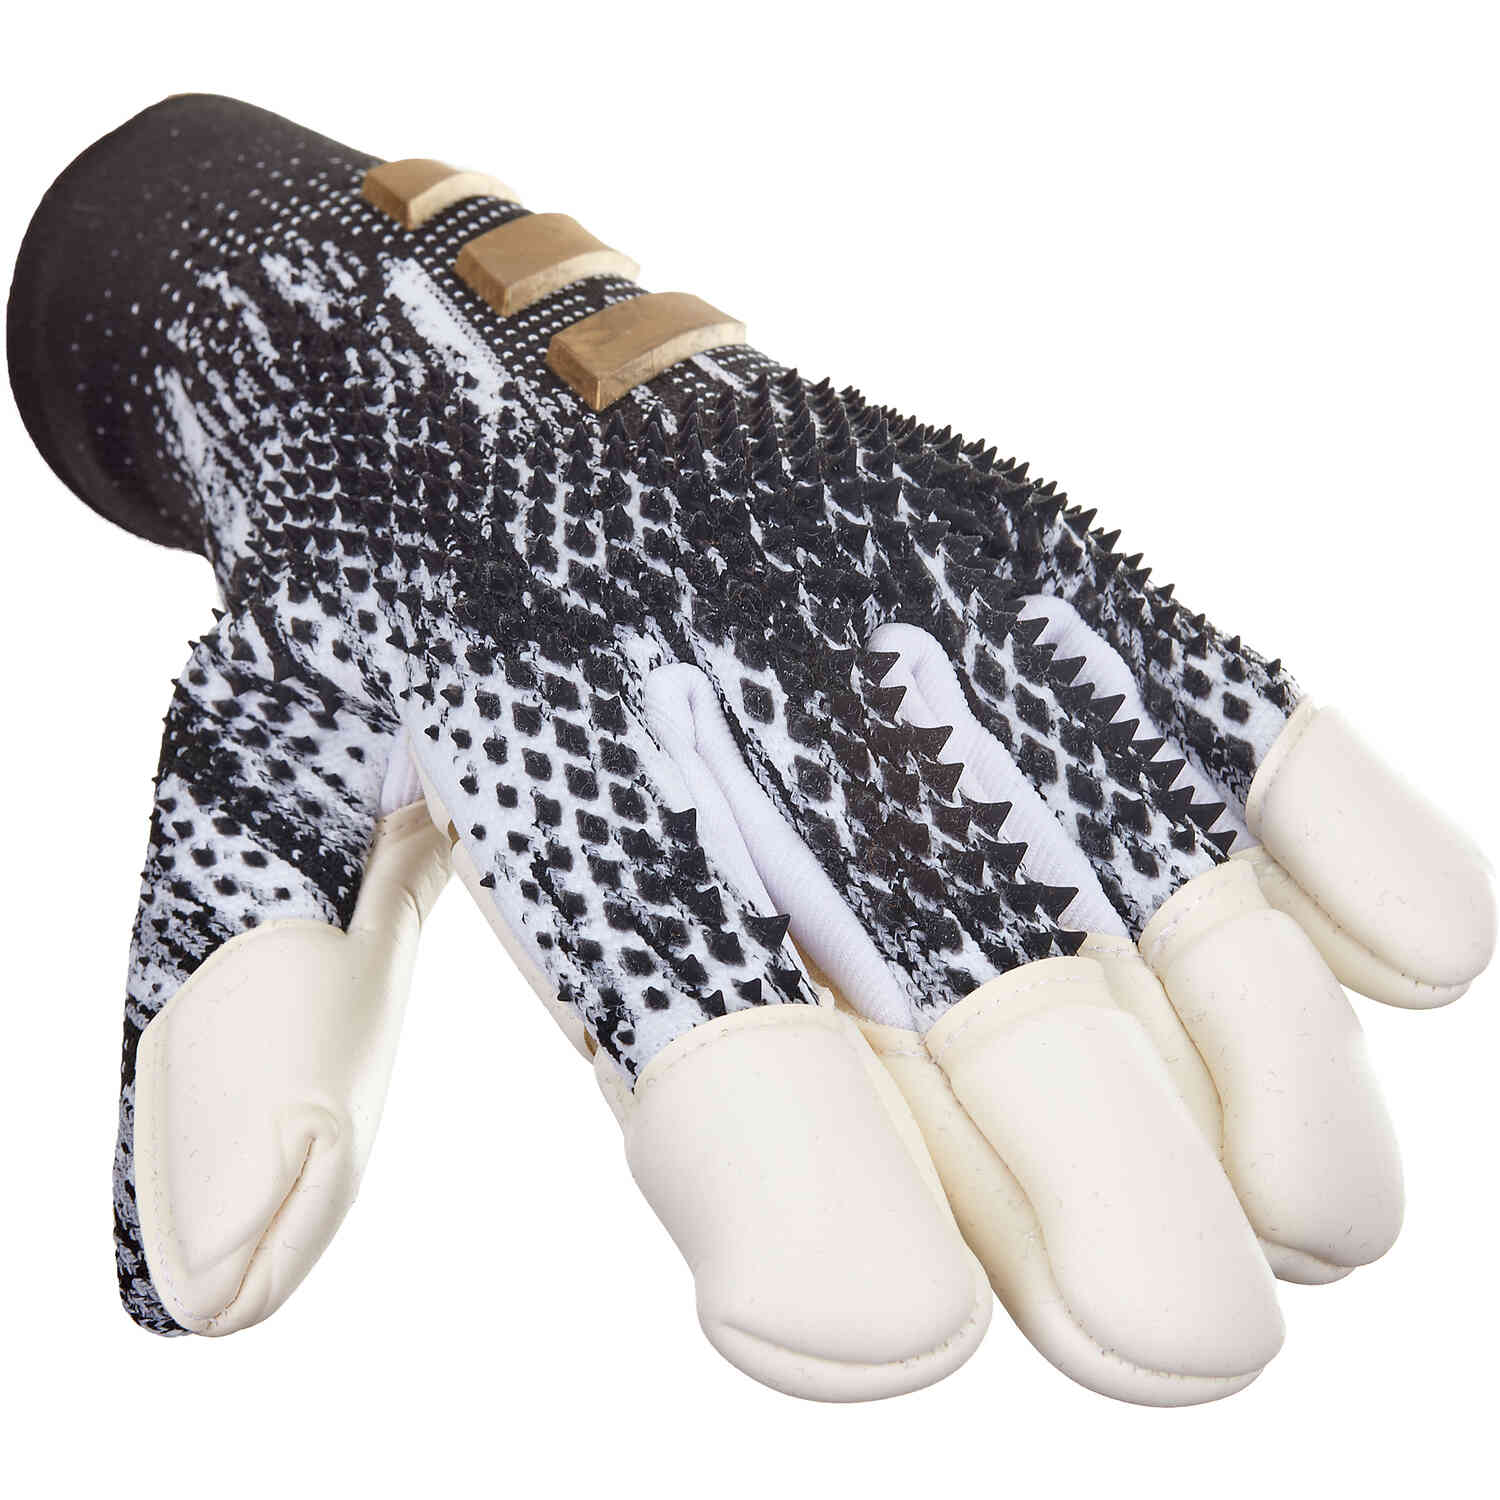 Predator Fingersave Goalkeeper Gloves - InFlight Soccer Master